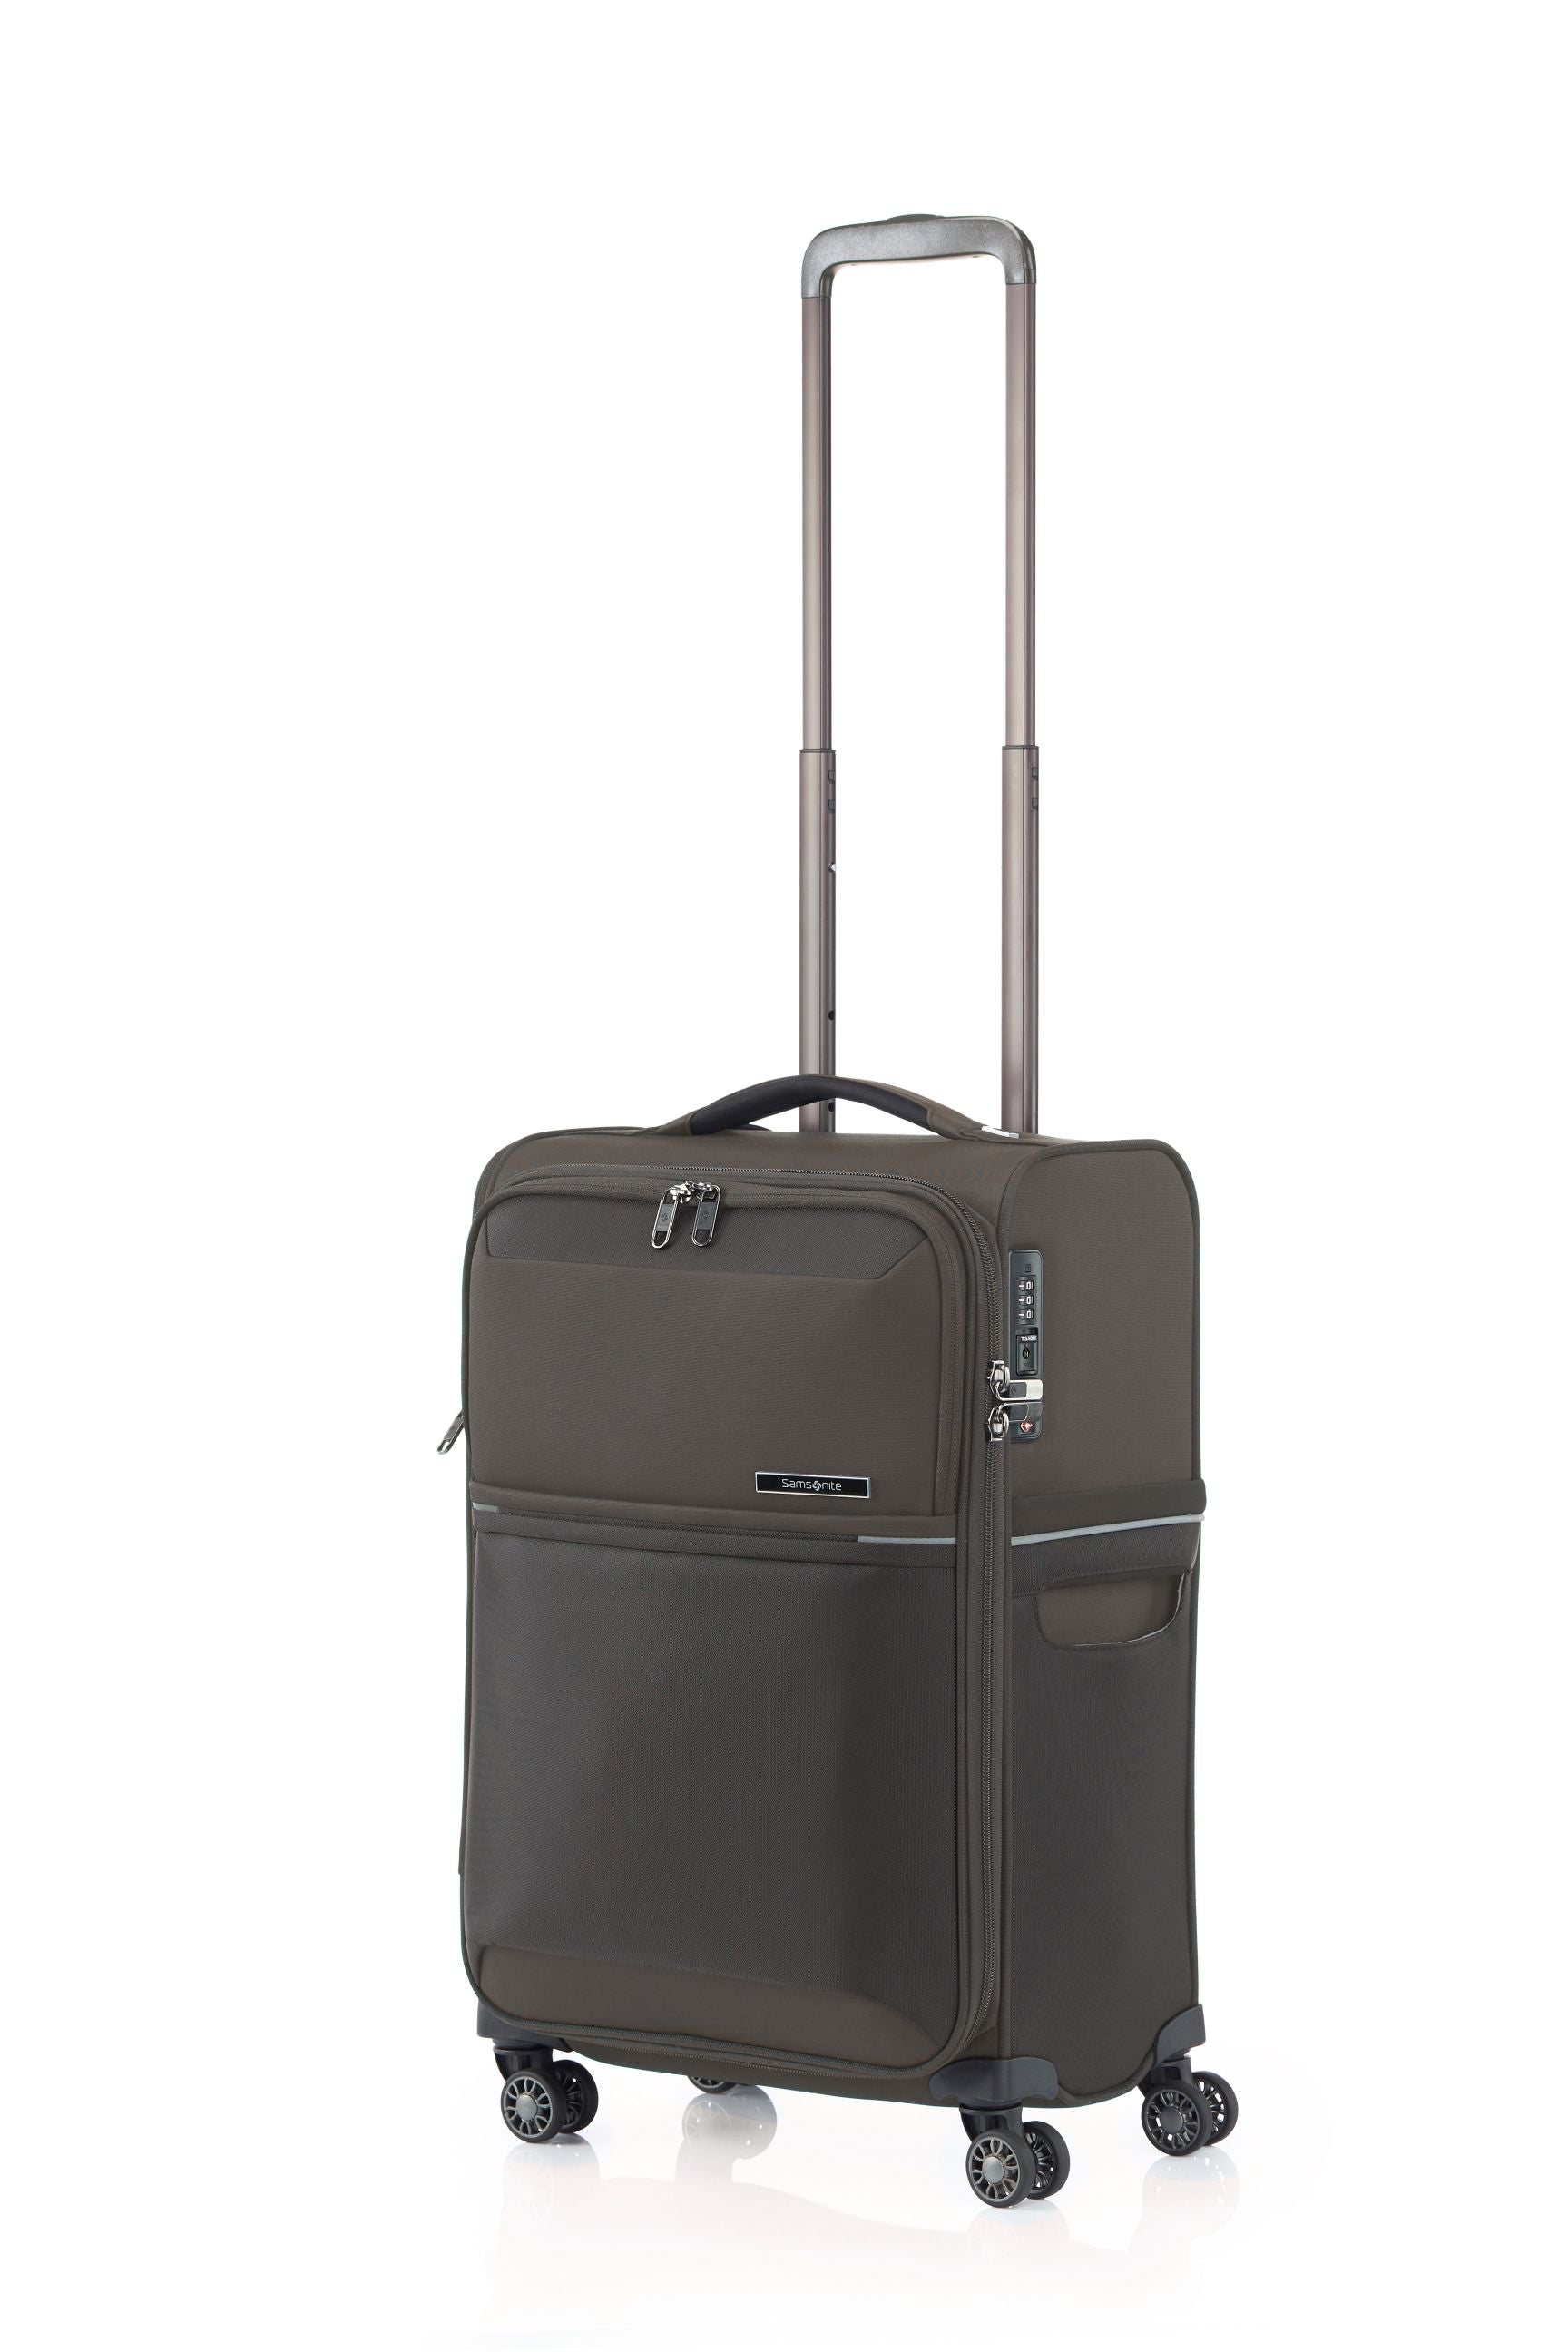 Samsonite - 73HR 55cm Small Suitcase - Platinum Grey-1